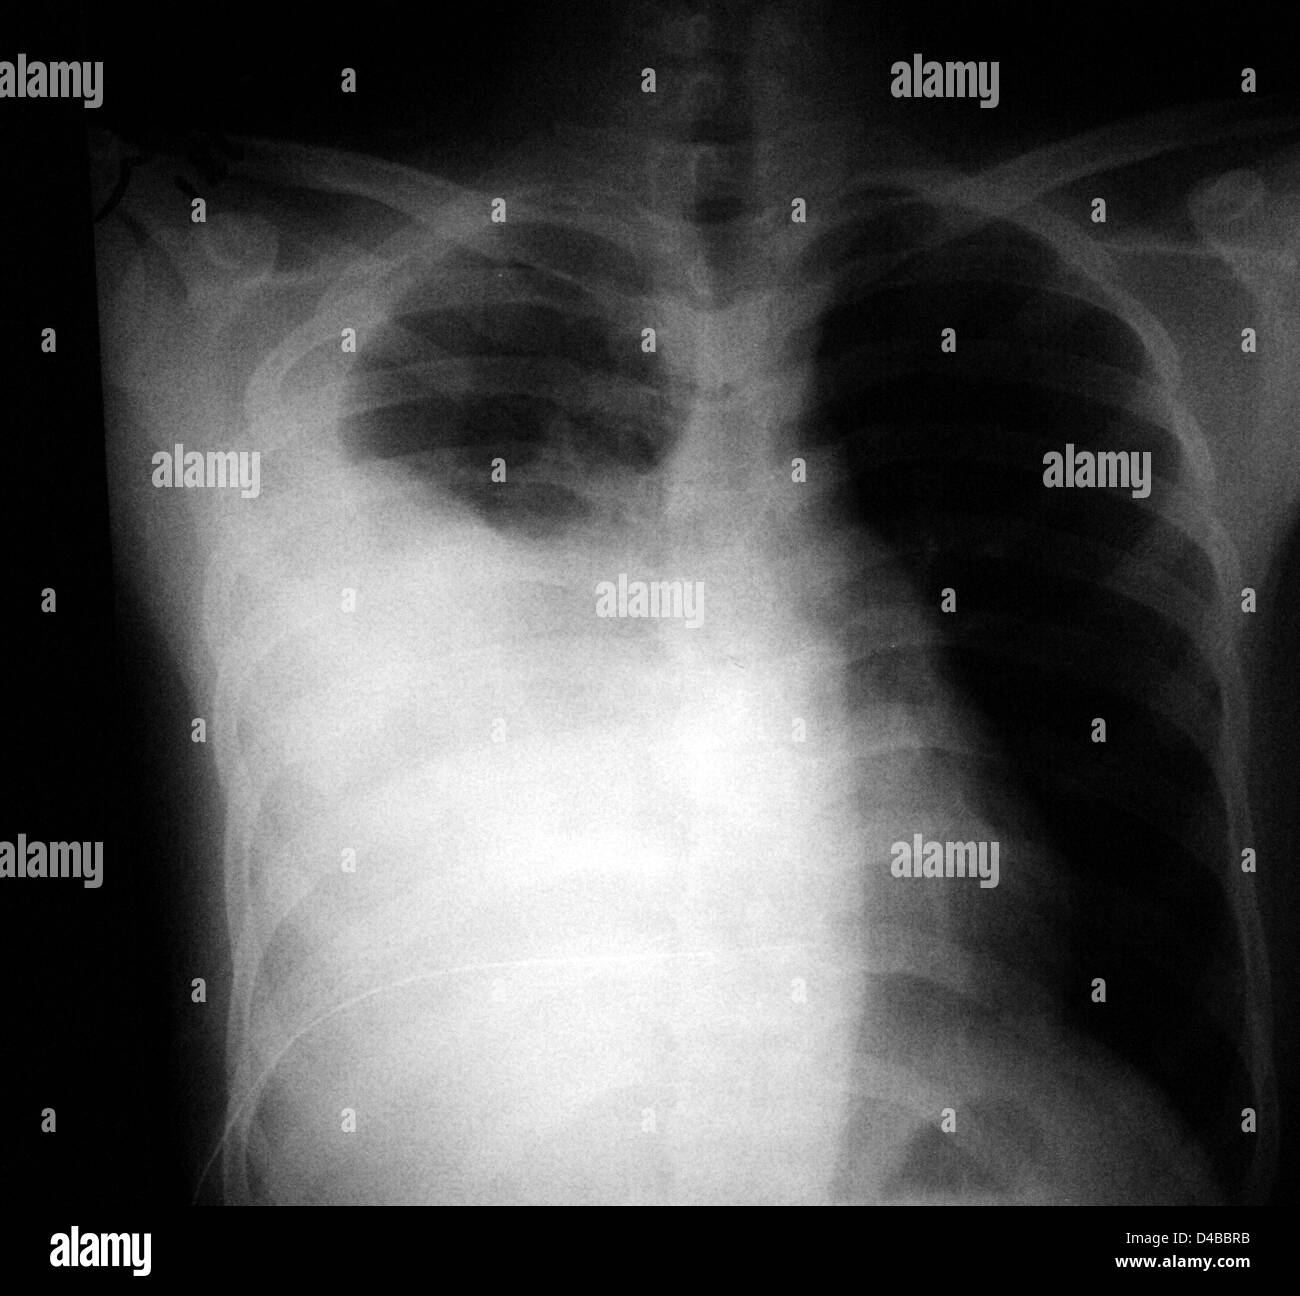 Questo potrebbe ostacolare la capacità del paziente di espandere i polmoni e respirare, come vi è un limitato spazio all'interno della cavità toracica. Foto Stock